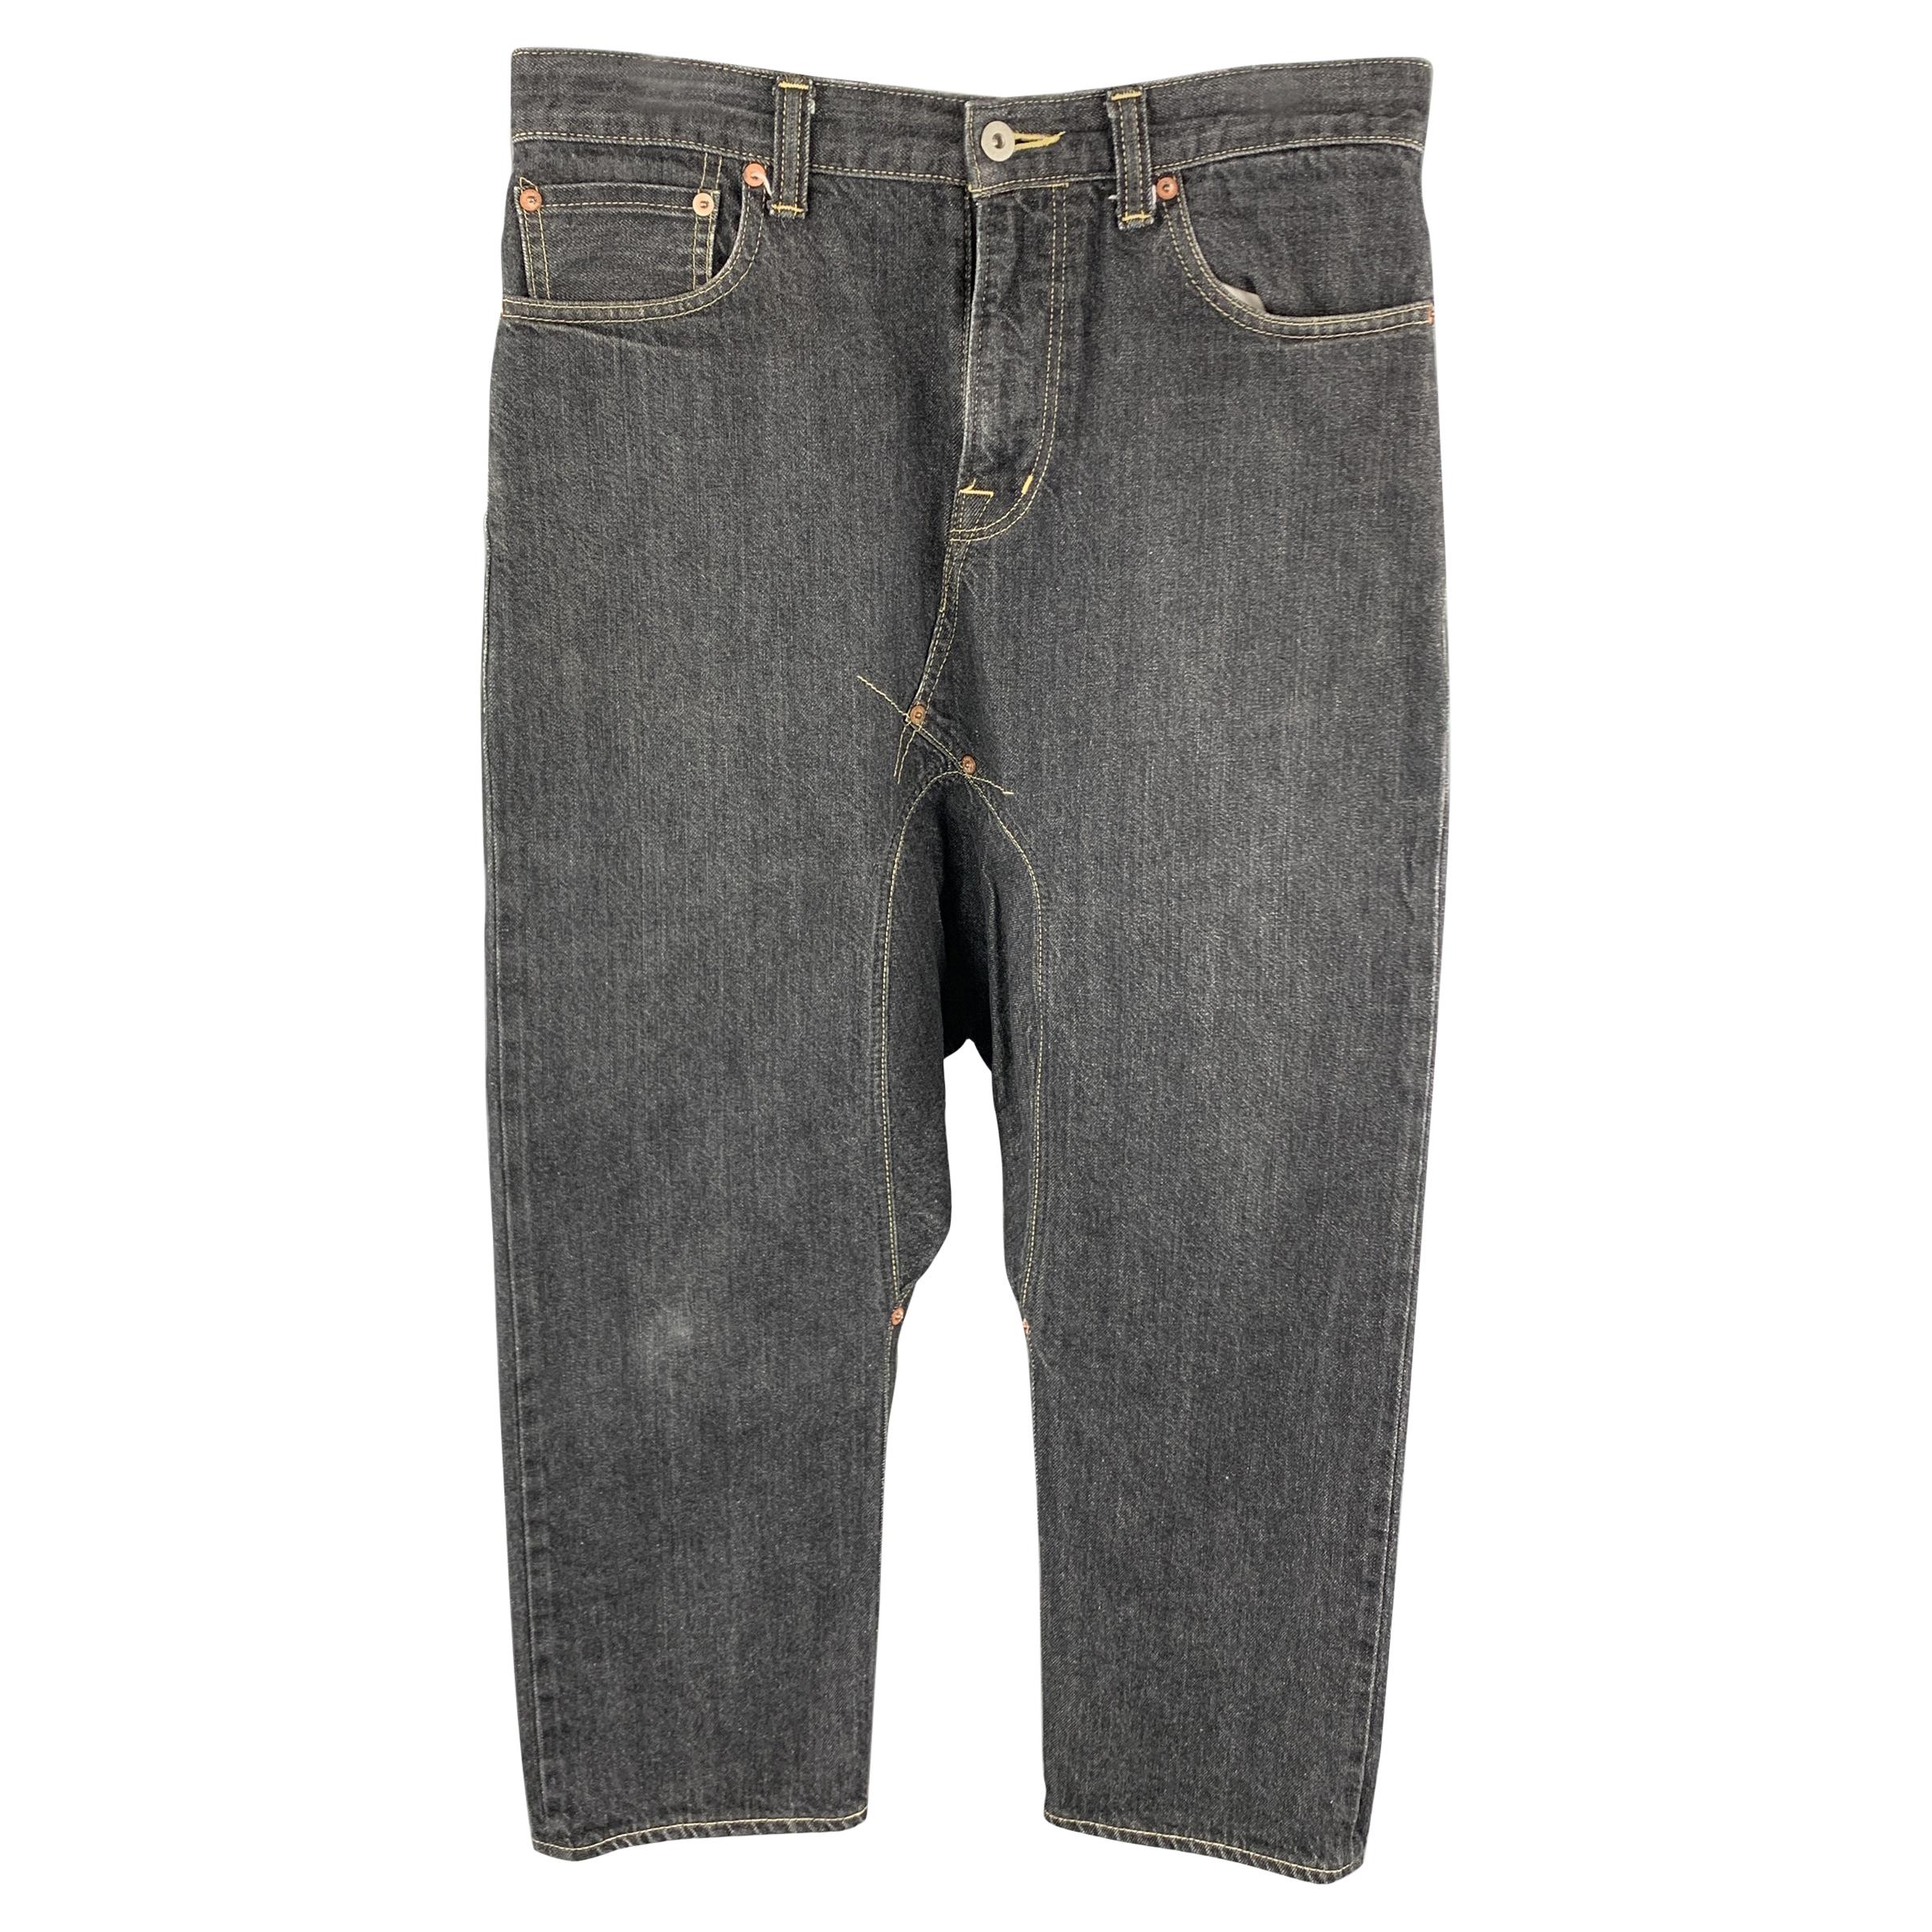 GANRYU by COMME des GARCONS Size S Charcoal Cotton Drop-Crotch Jeans